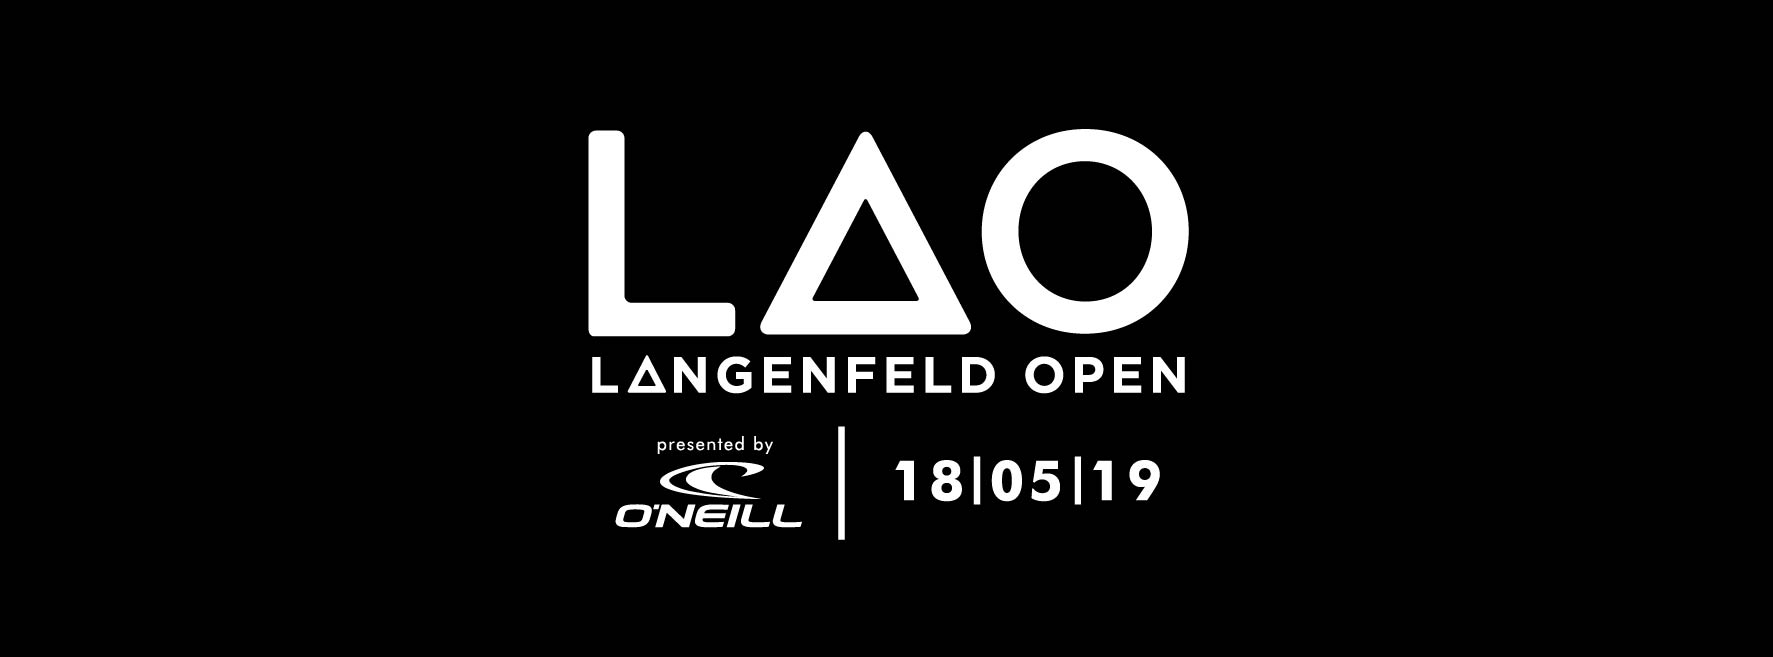 Langenfeld Open 2019